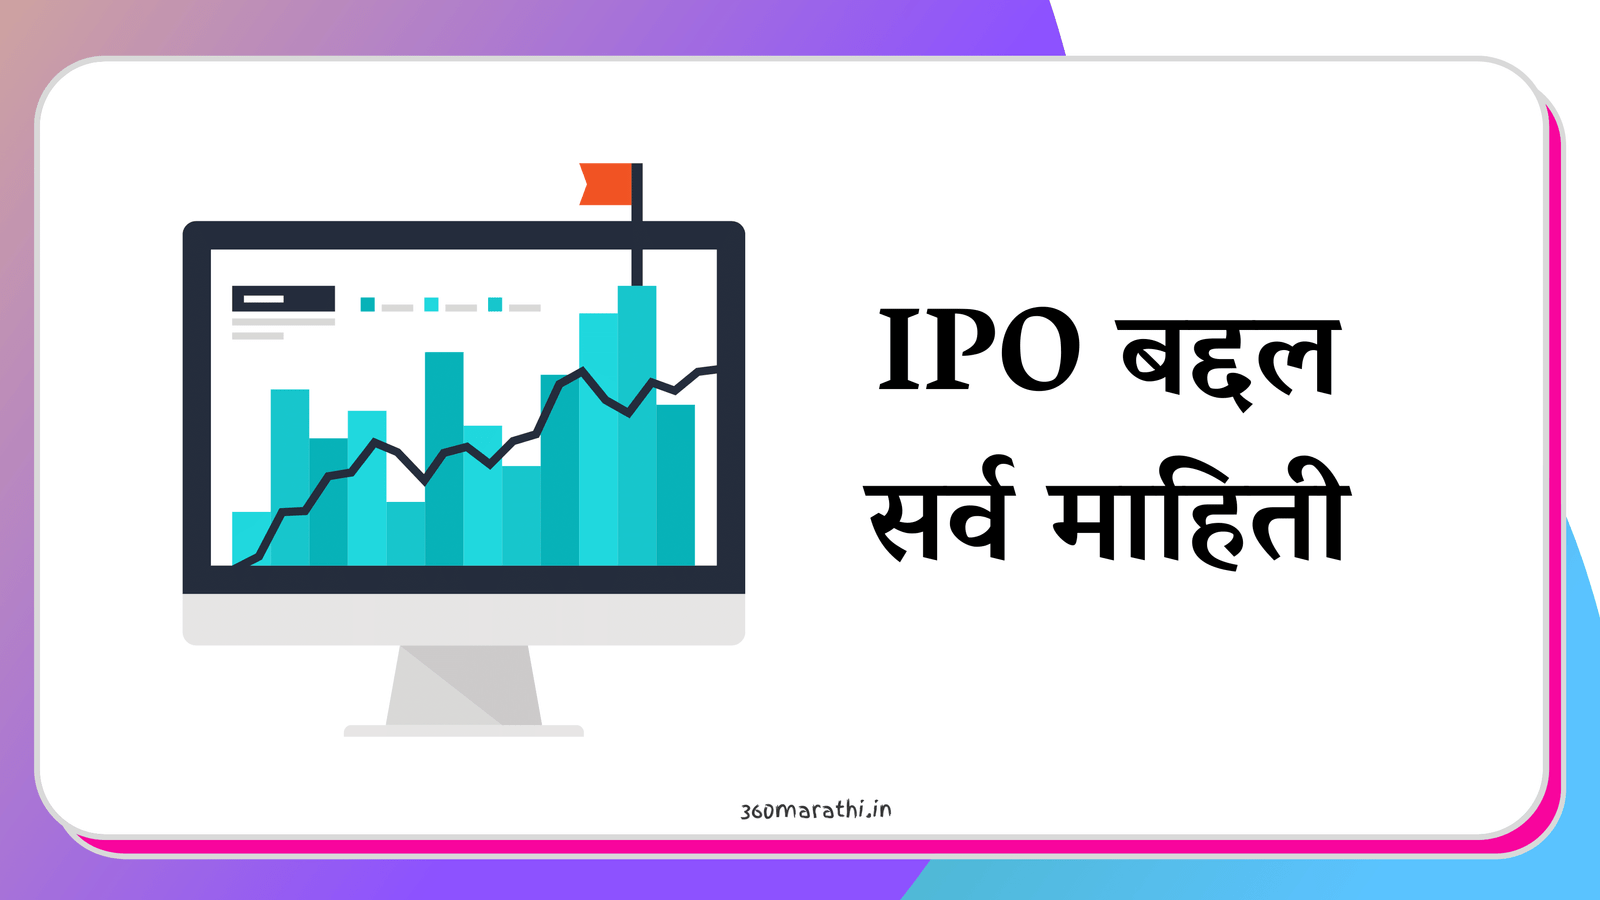 आयपीओ : IPO म्हणजे काय, प्रकार, अलॉटमेंट, इन्व्हेस्टमेंट कशी करावी | IPO allotment meaning in Marathi